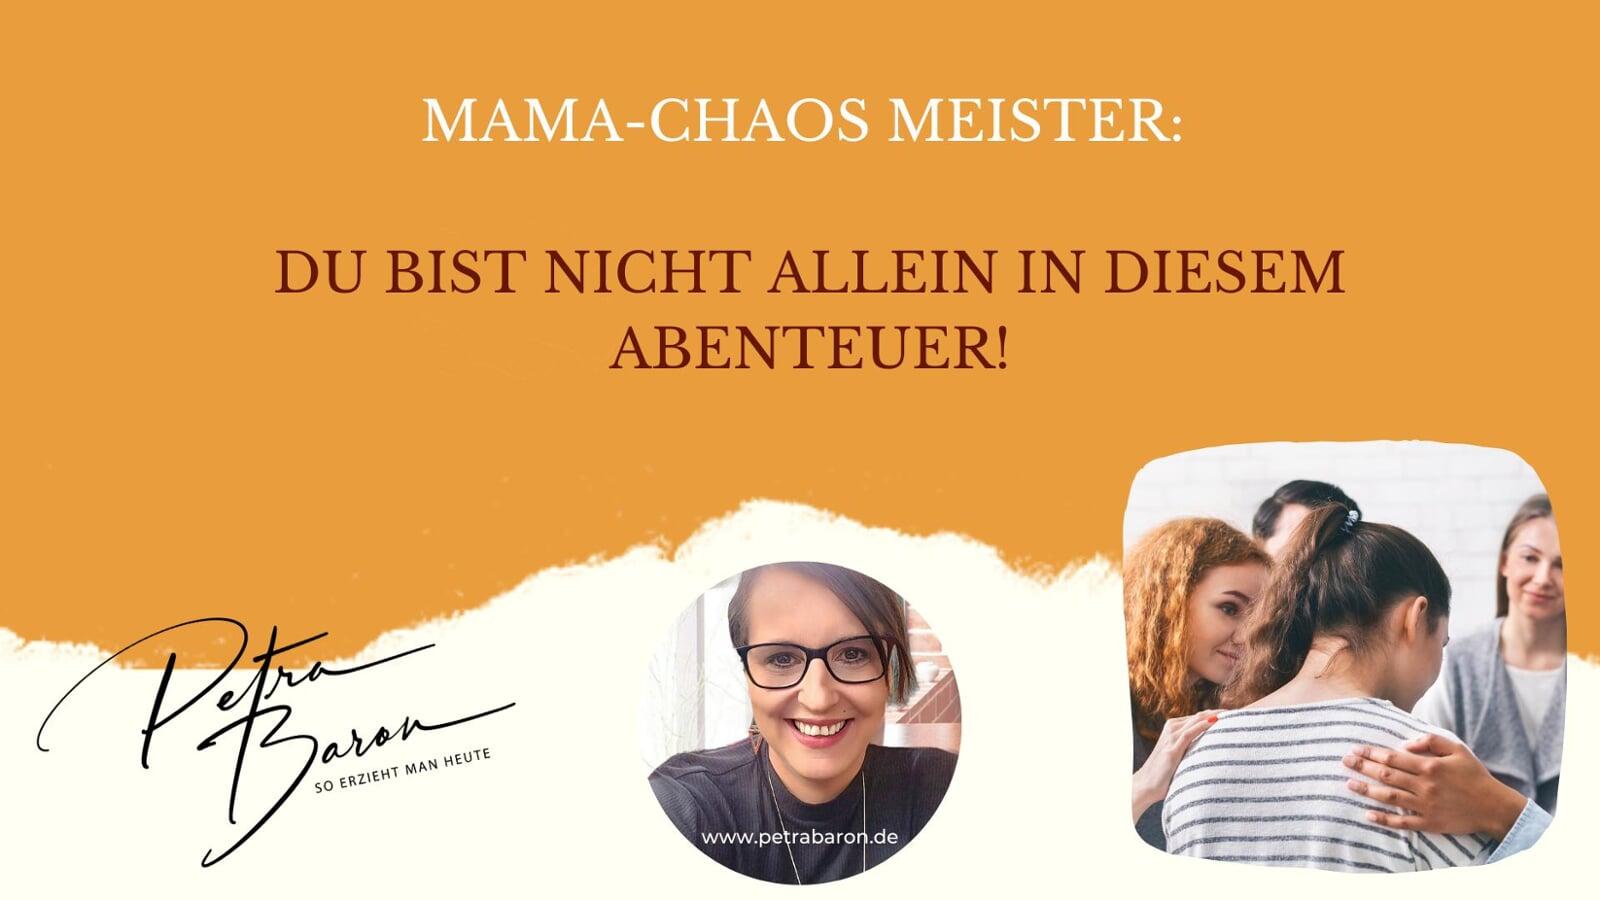 Mama-Chaos Meister: Du bist nicht allein in diesem Abenteuer!